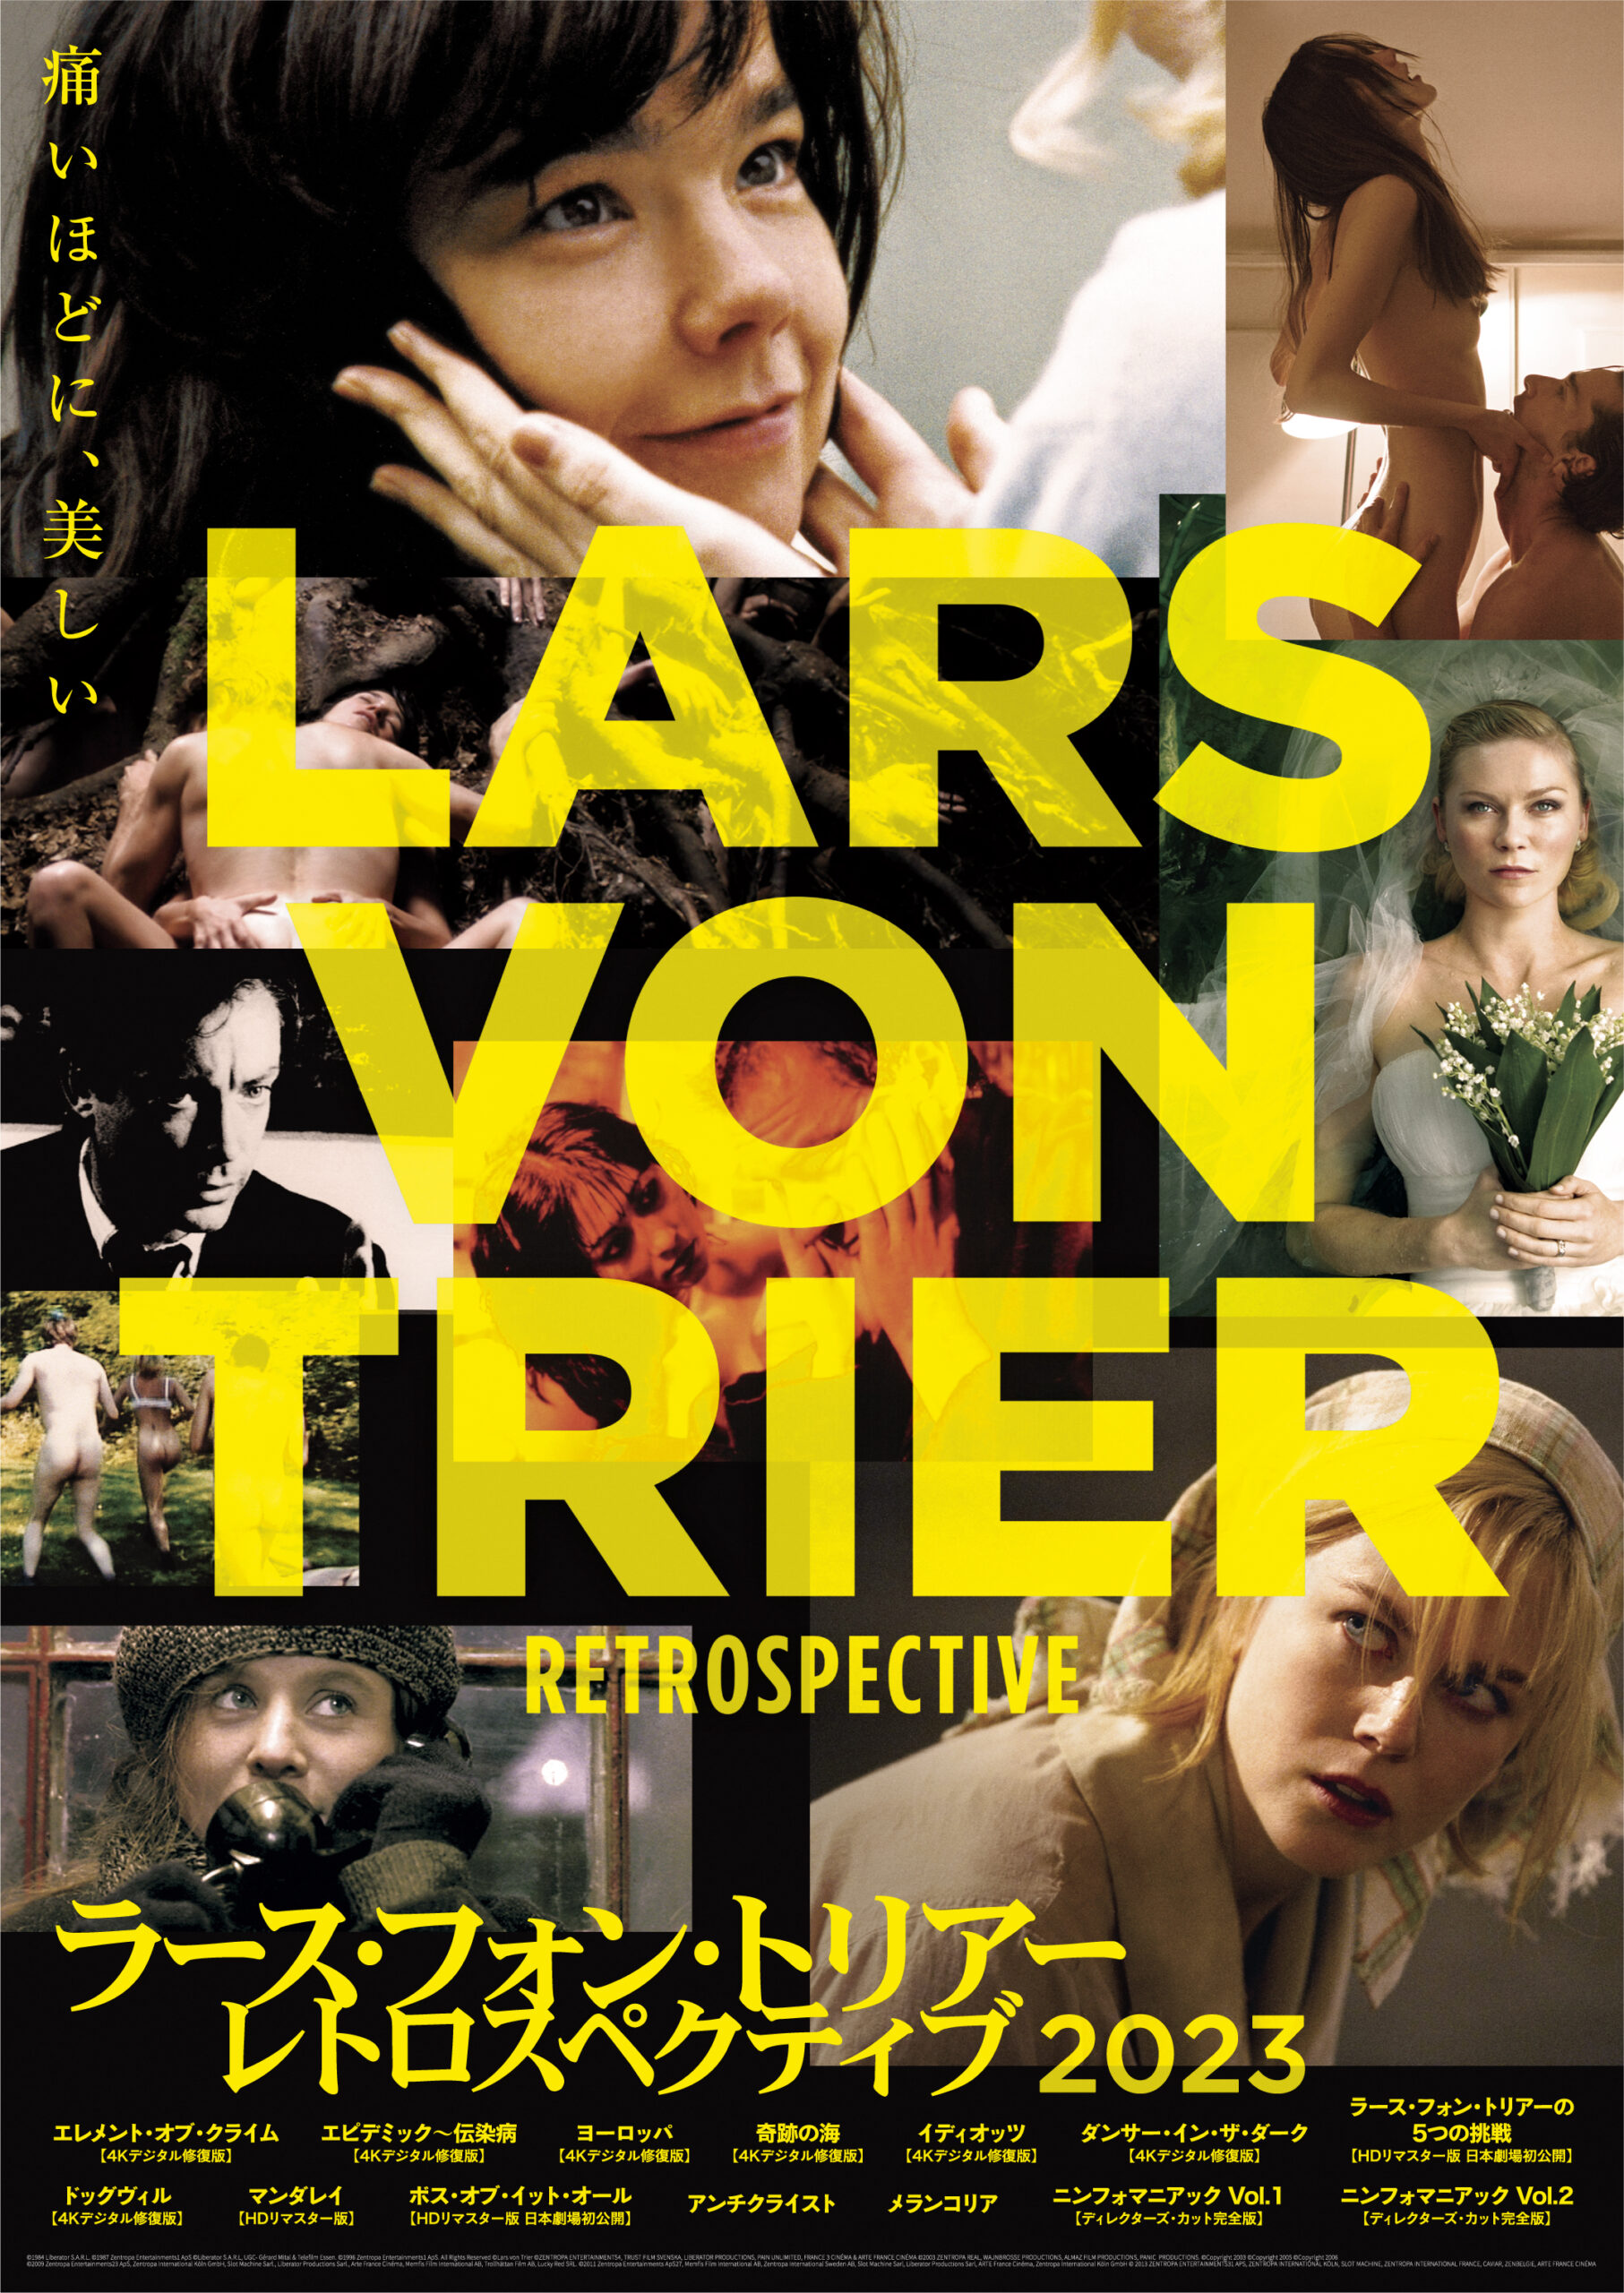 リティク・ローシャン主演の感動ロードムービー『人生は二度とない』DVDが8月2日発売決定